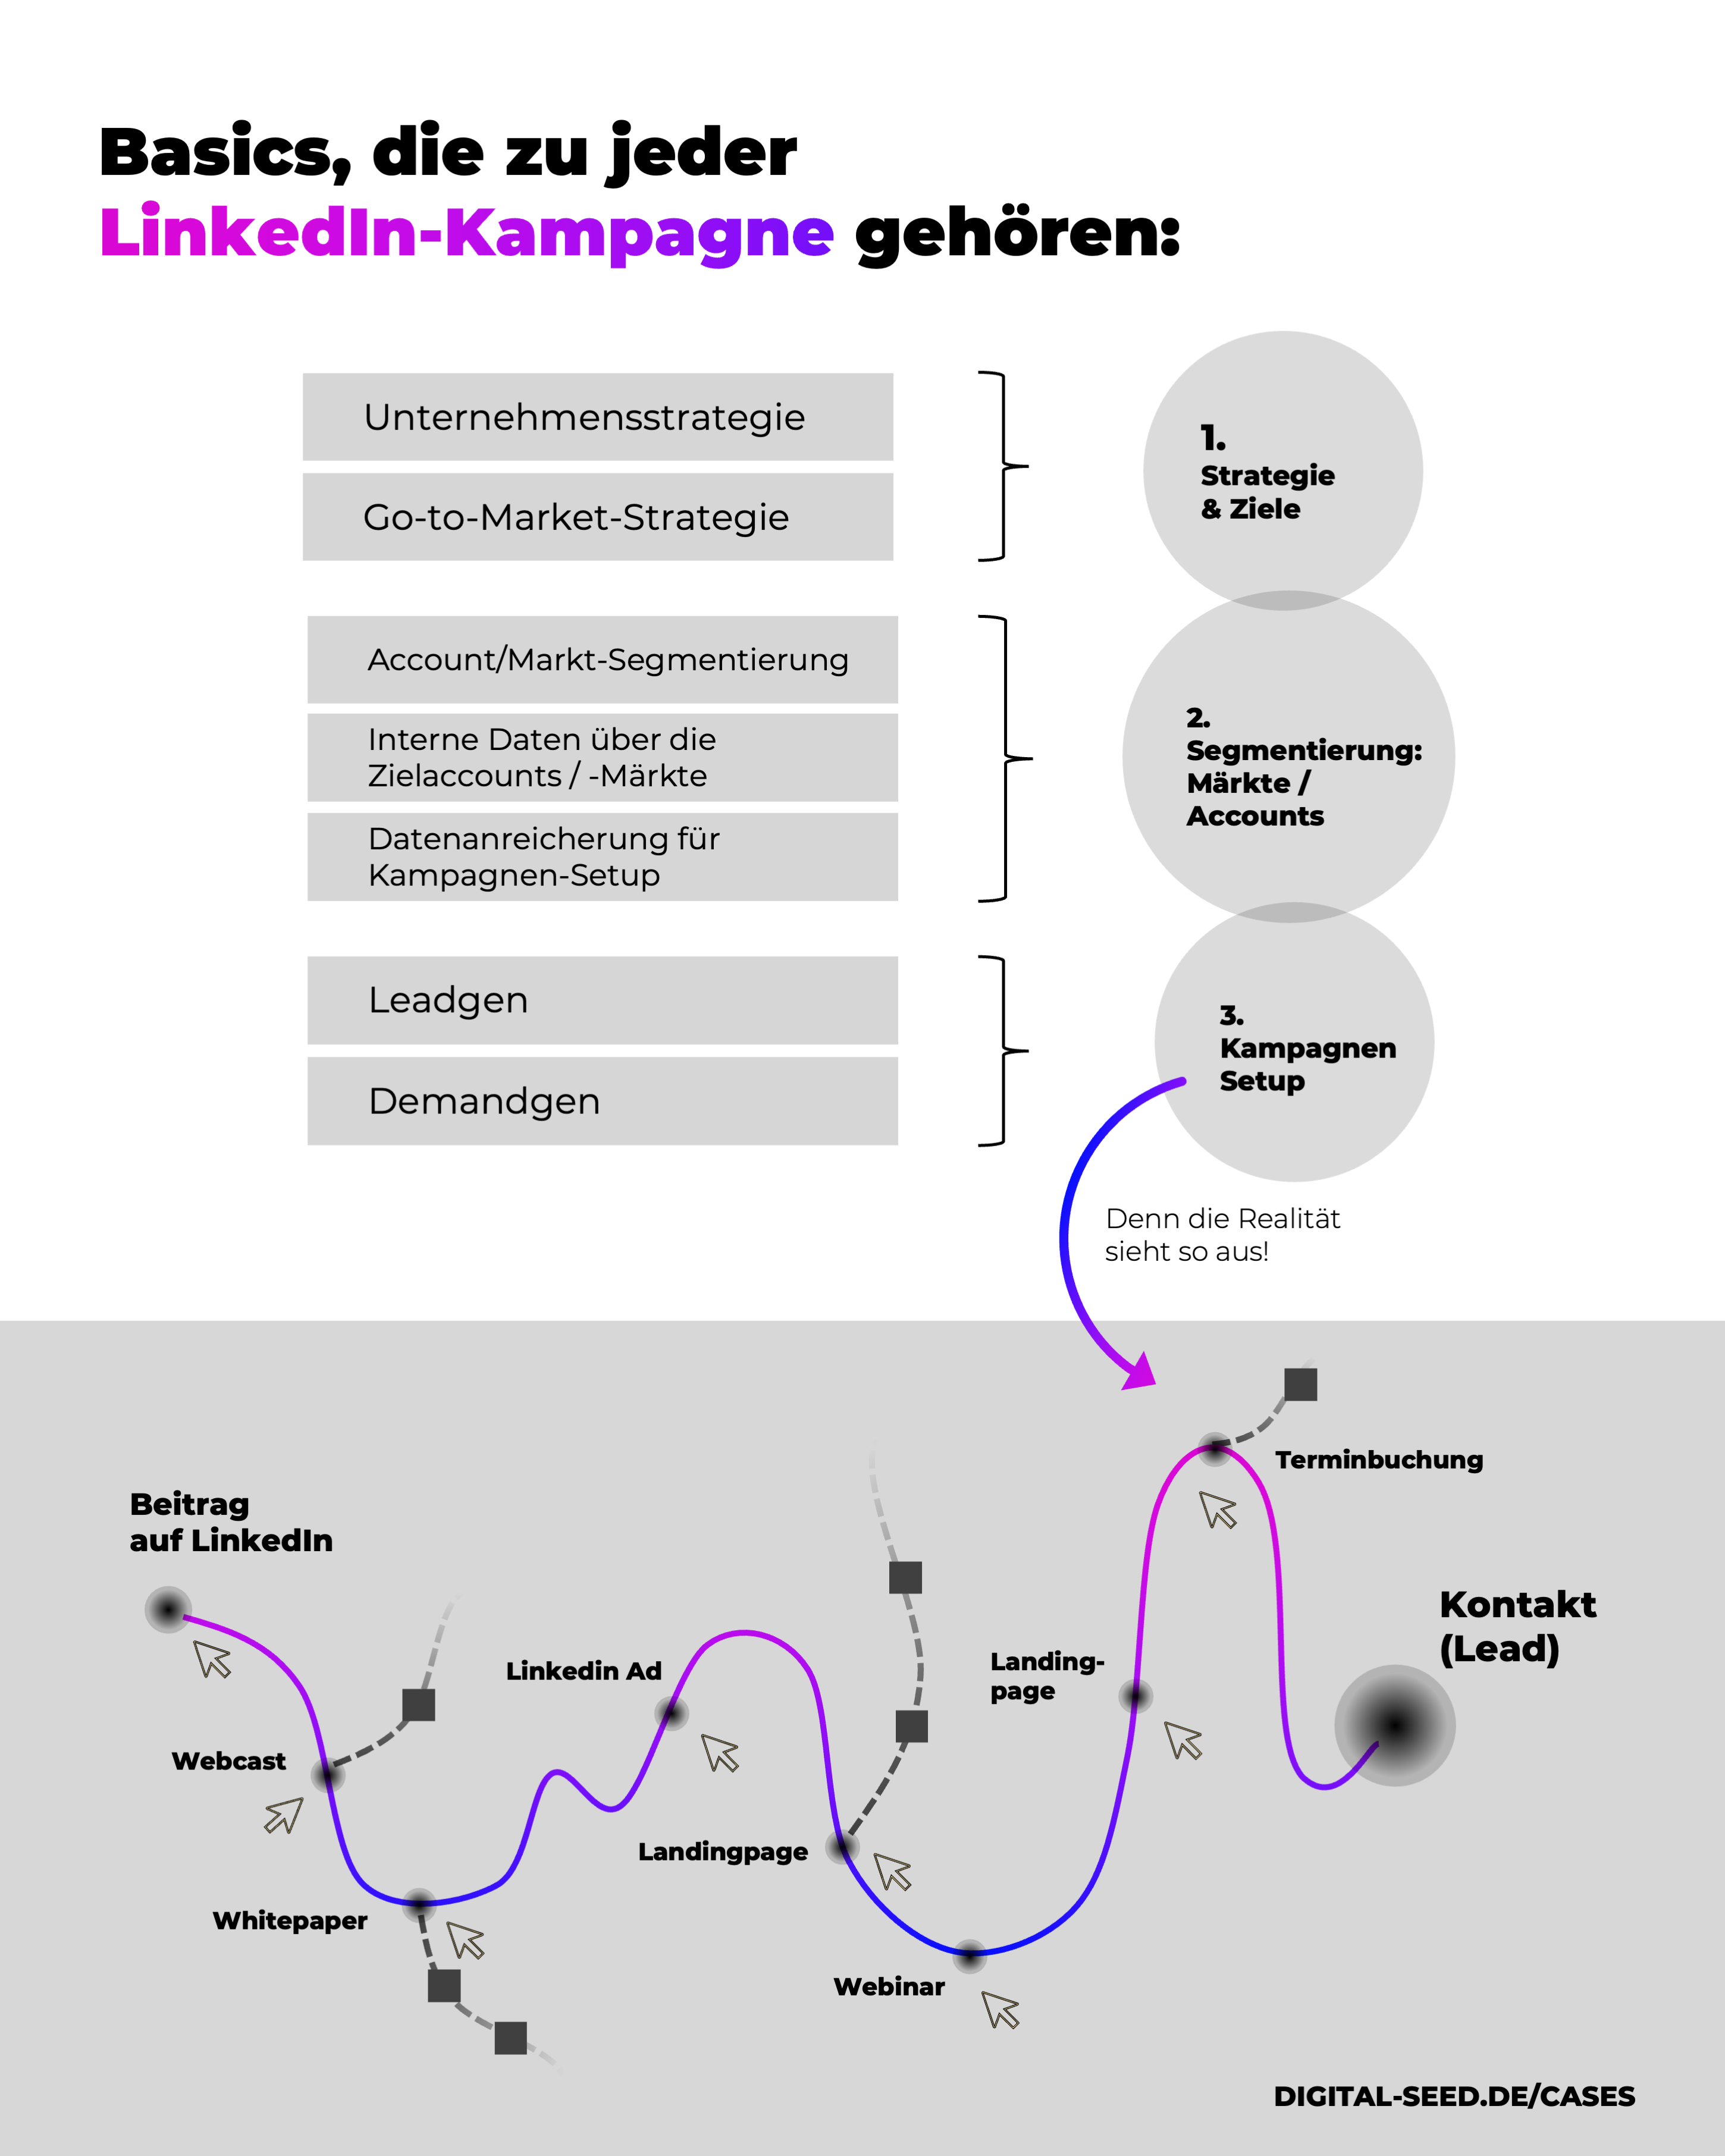 Strategische Grundlagen für eine LinkedIn Kampagne in 3 Schritten erklärt.